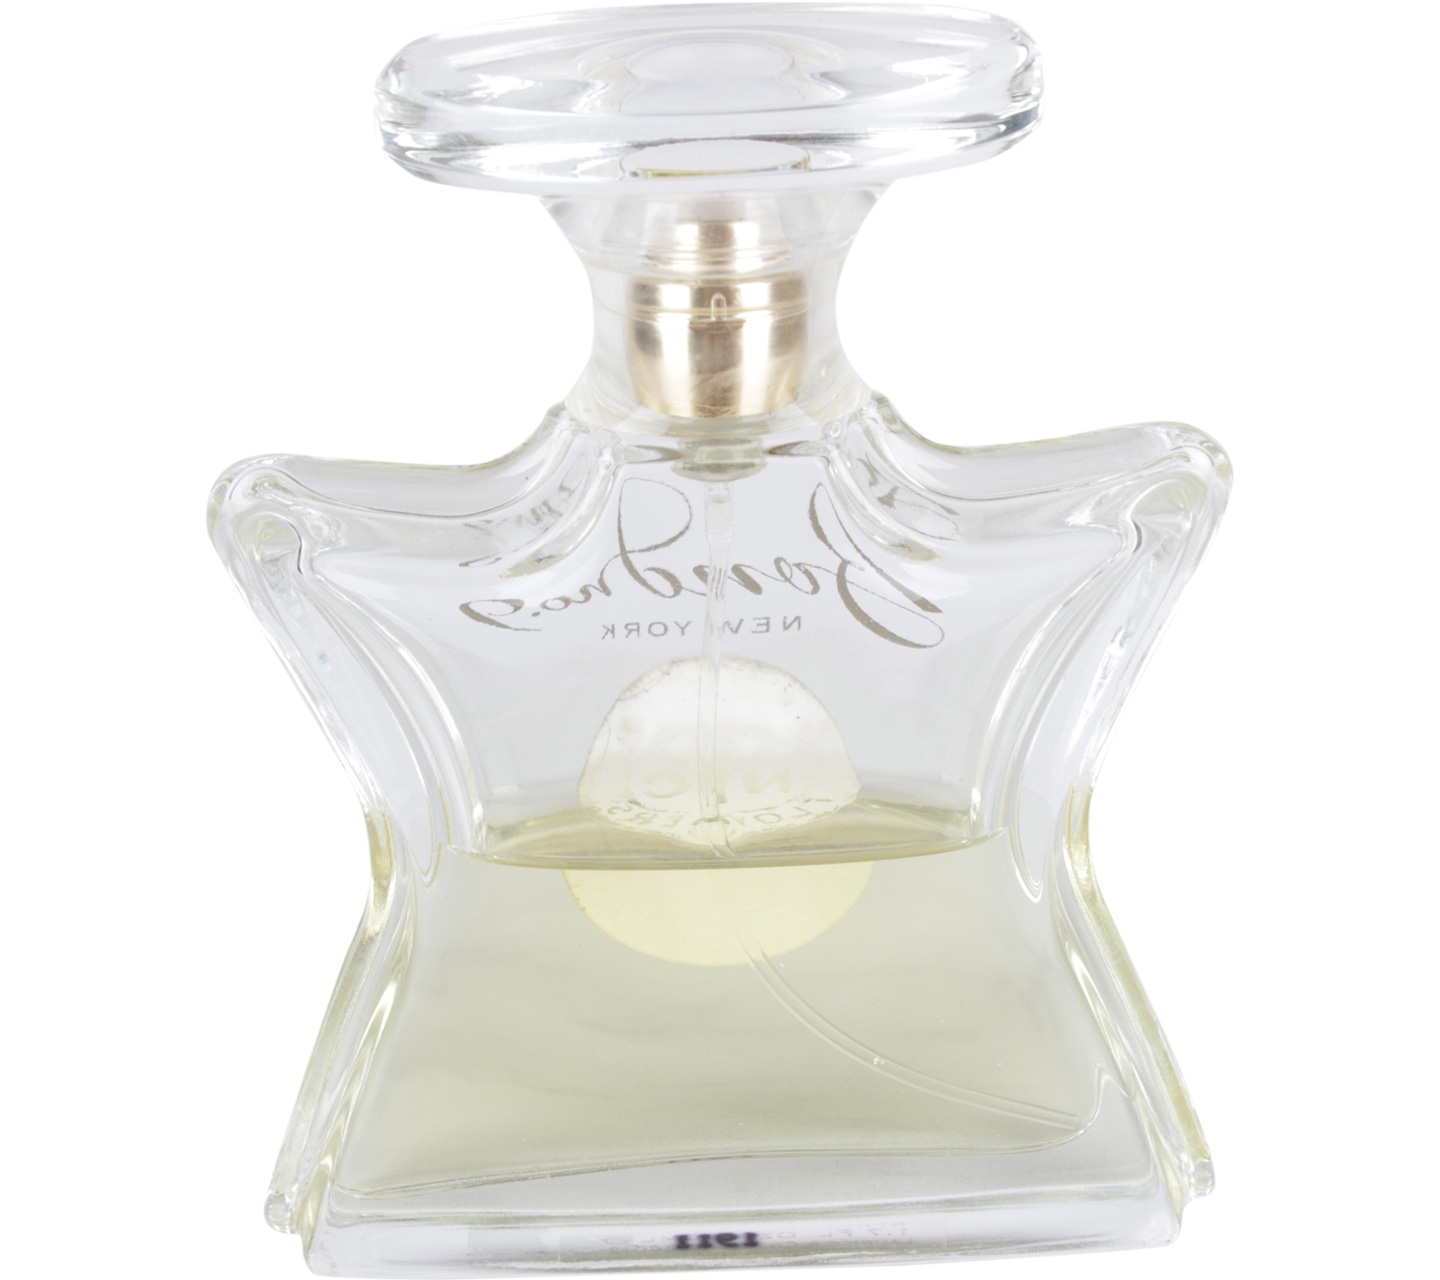 Bond No.9 Chelsea Eau De Parfum Fragrance